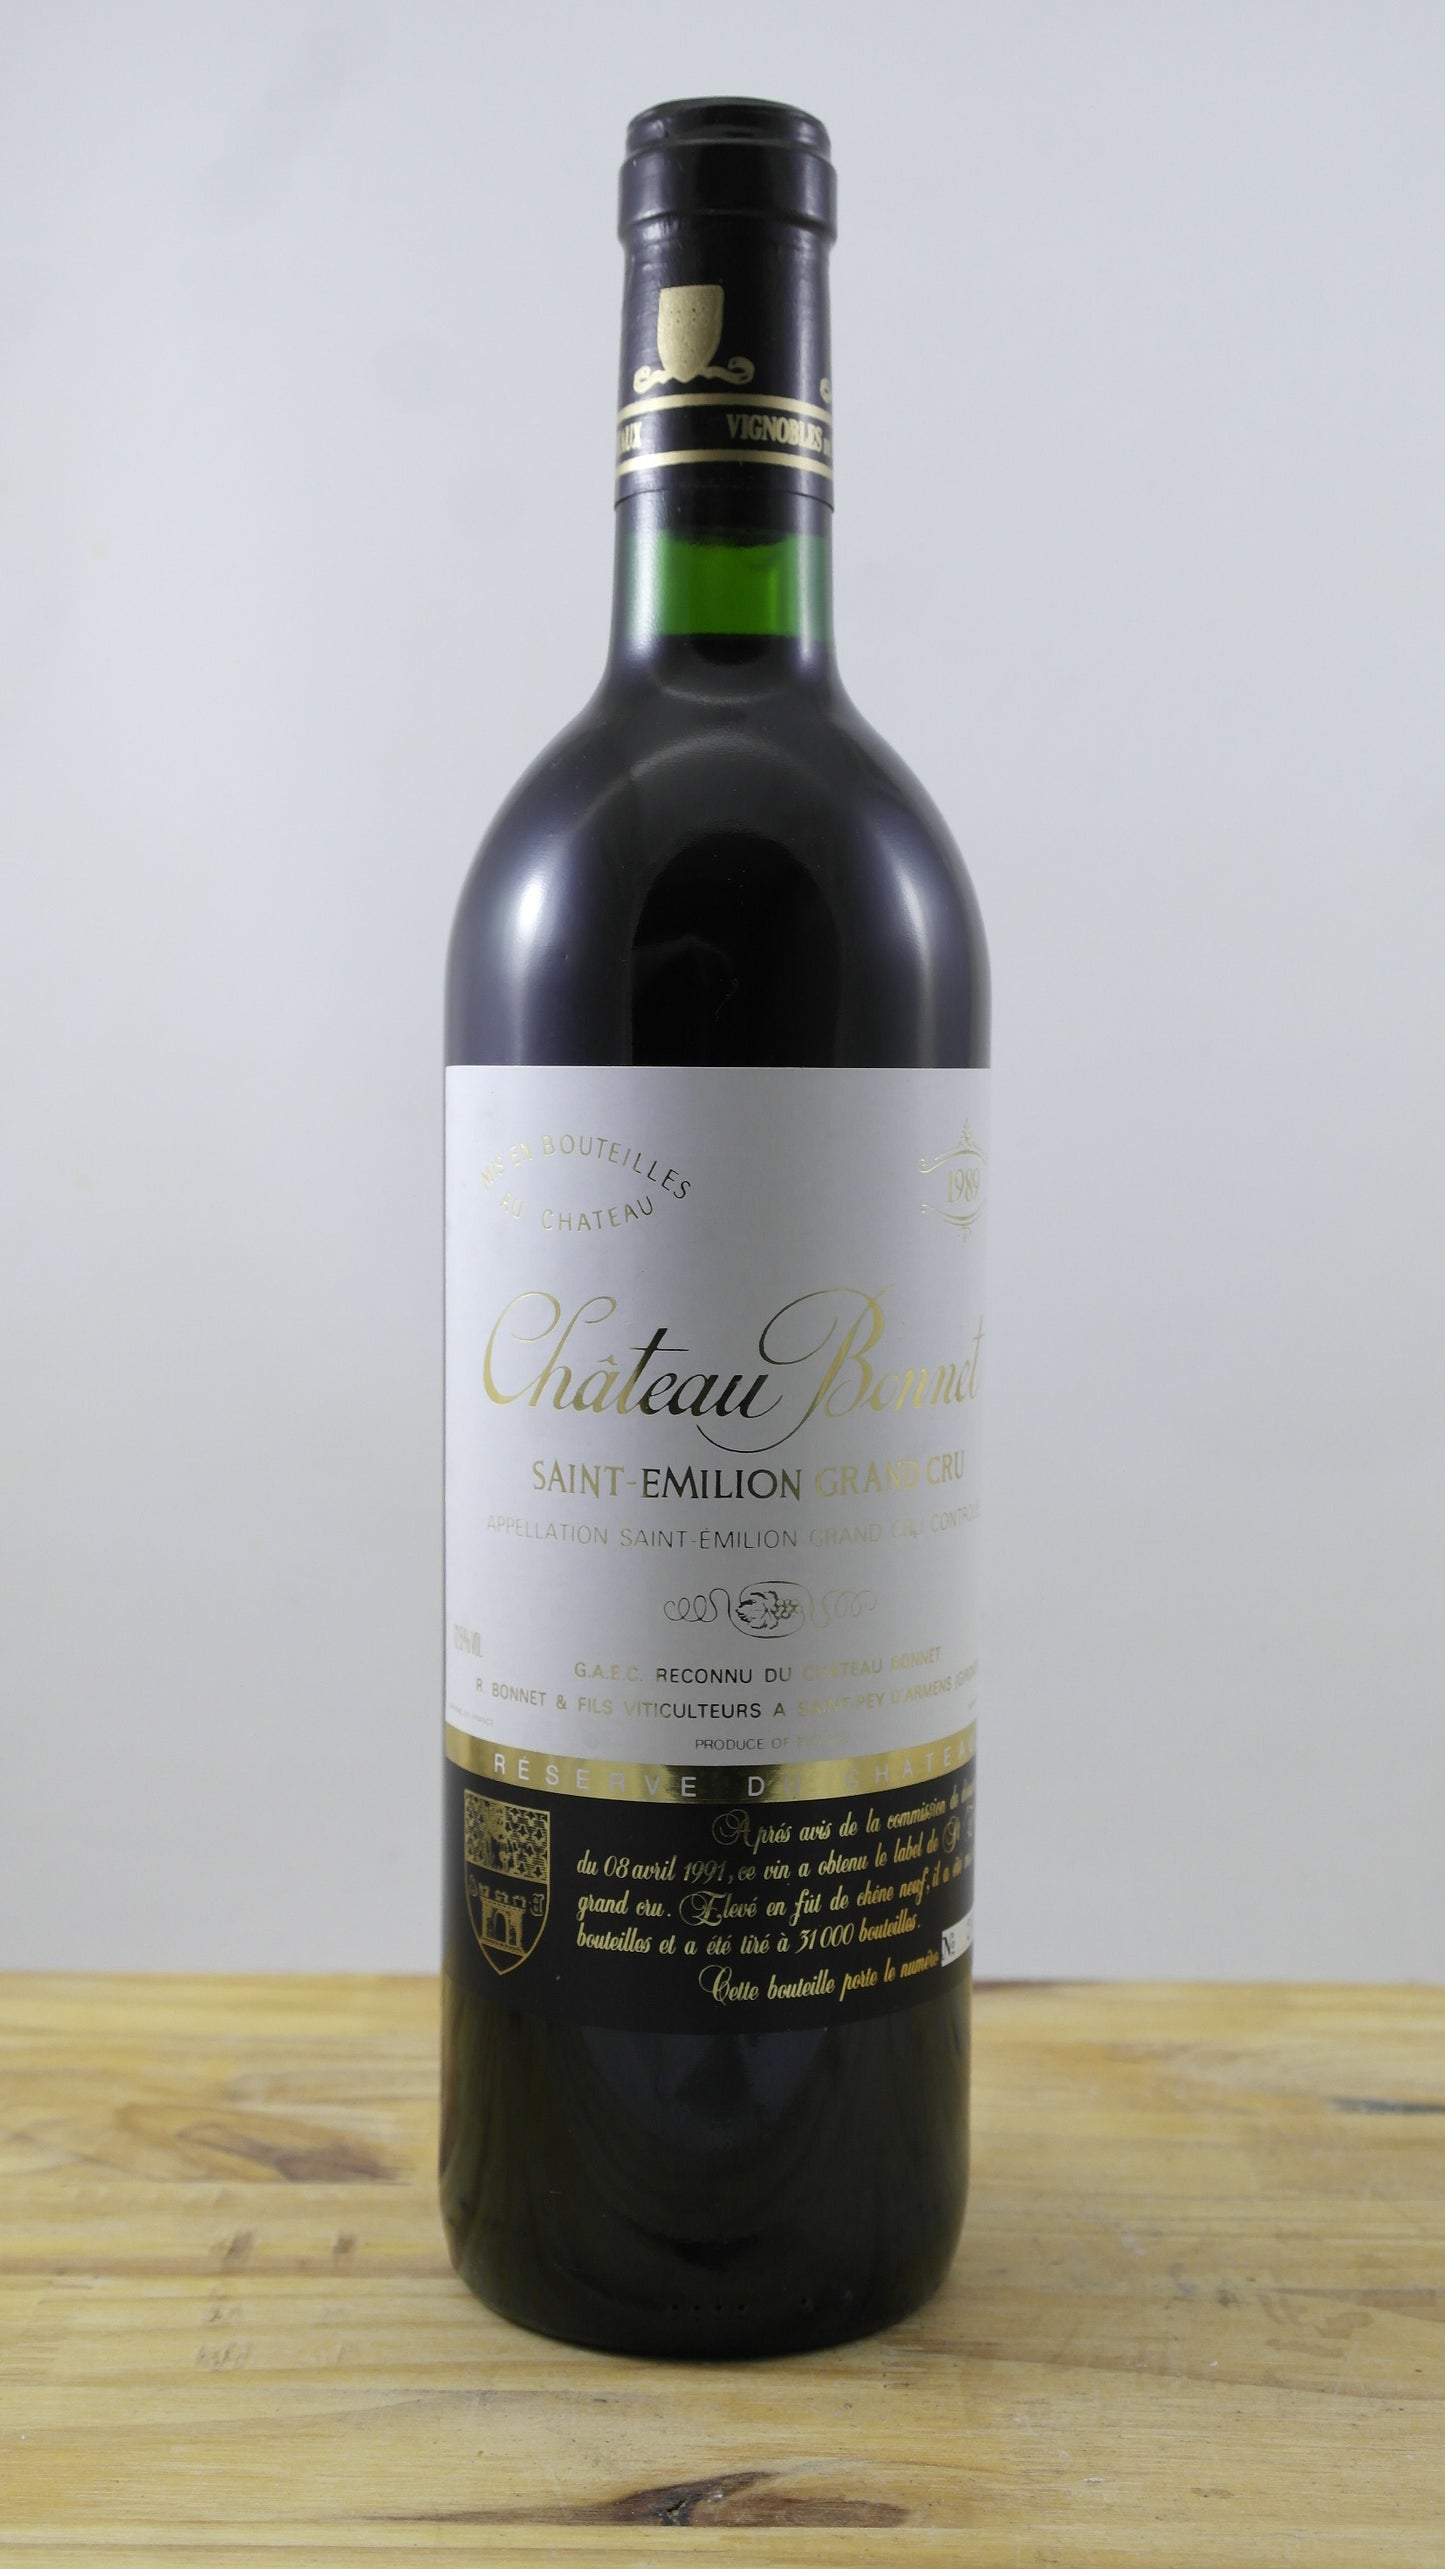 Château Bonnet Vin 1989